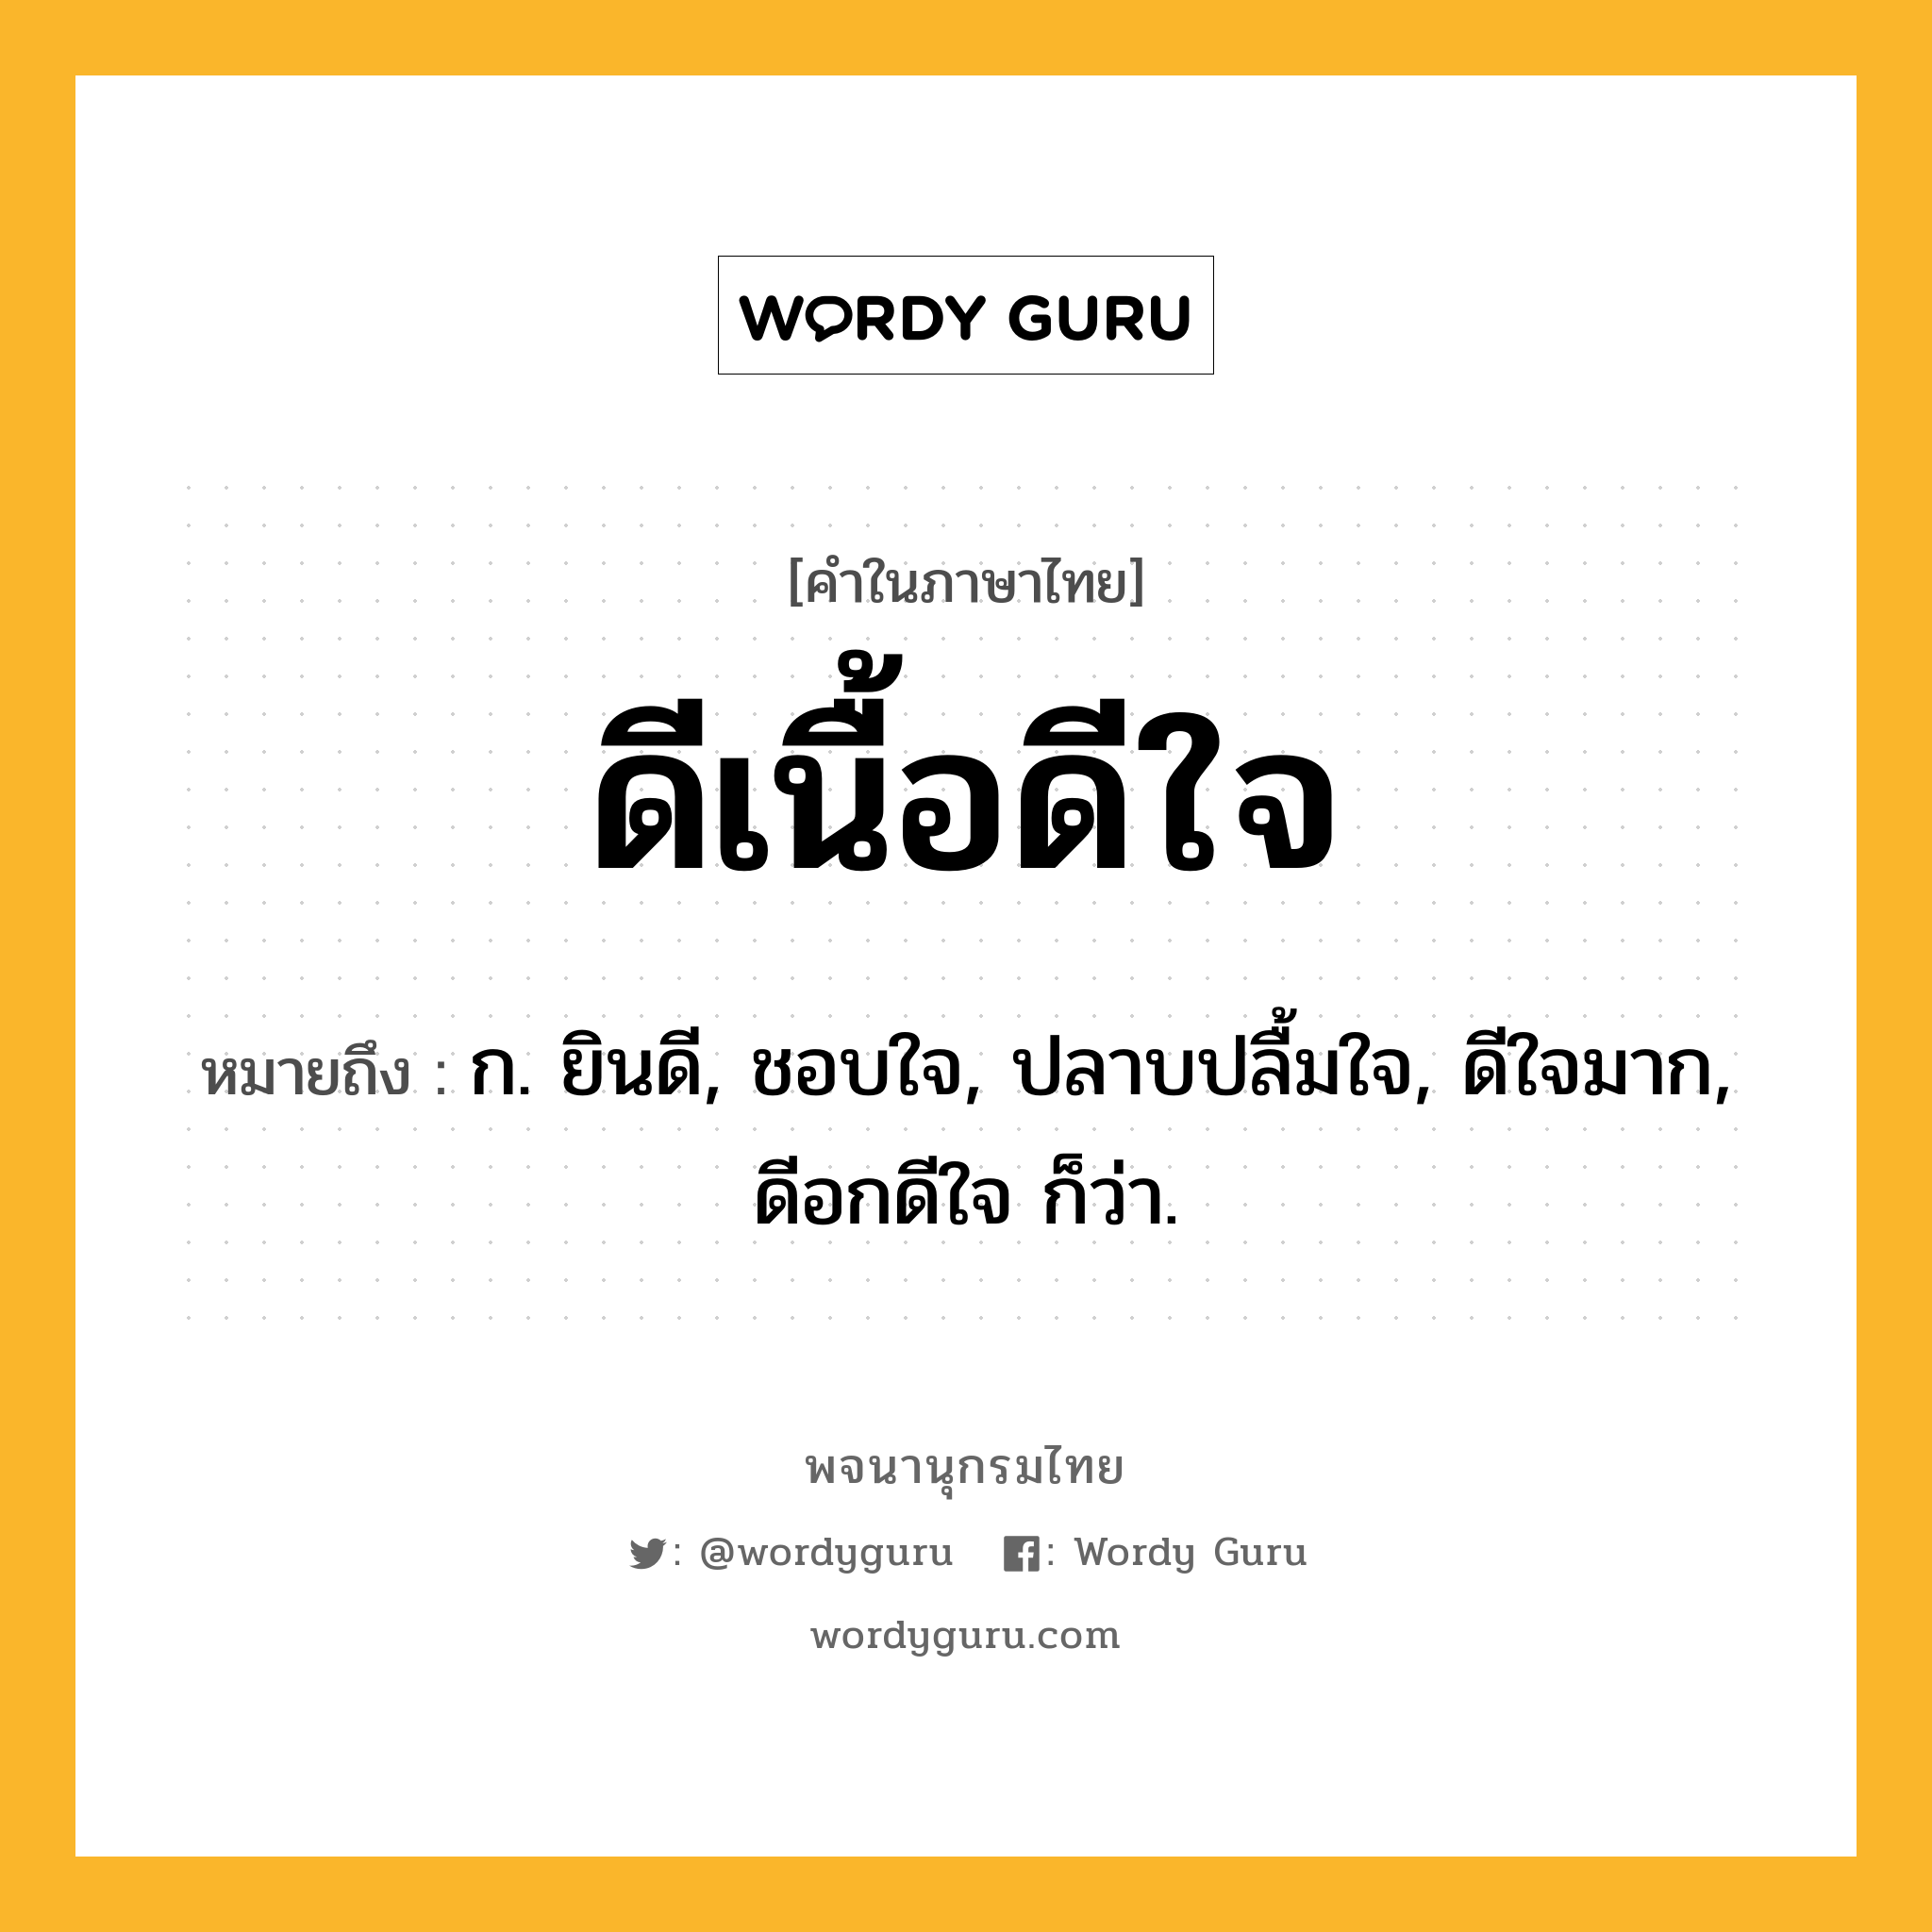 ดีเนื้อดีใจ ความหมาย หมายถึงอะไร?, คำในภาษาไทย ดีเนื้อดีใจ หมายถึง ก. ยินดี, ชอบใจ, ปลาบปลื้มใจ, ดีใจมาก, ดีอกดีใจ ก็ว่า.